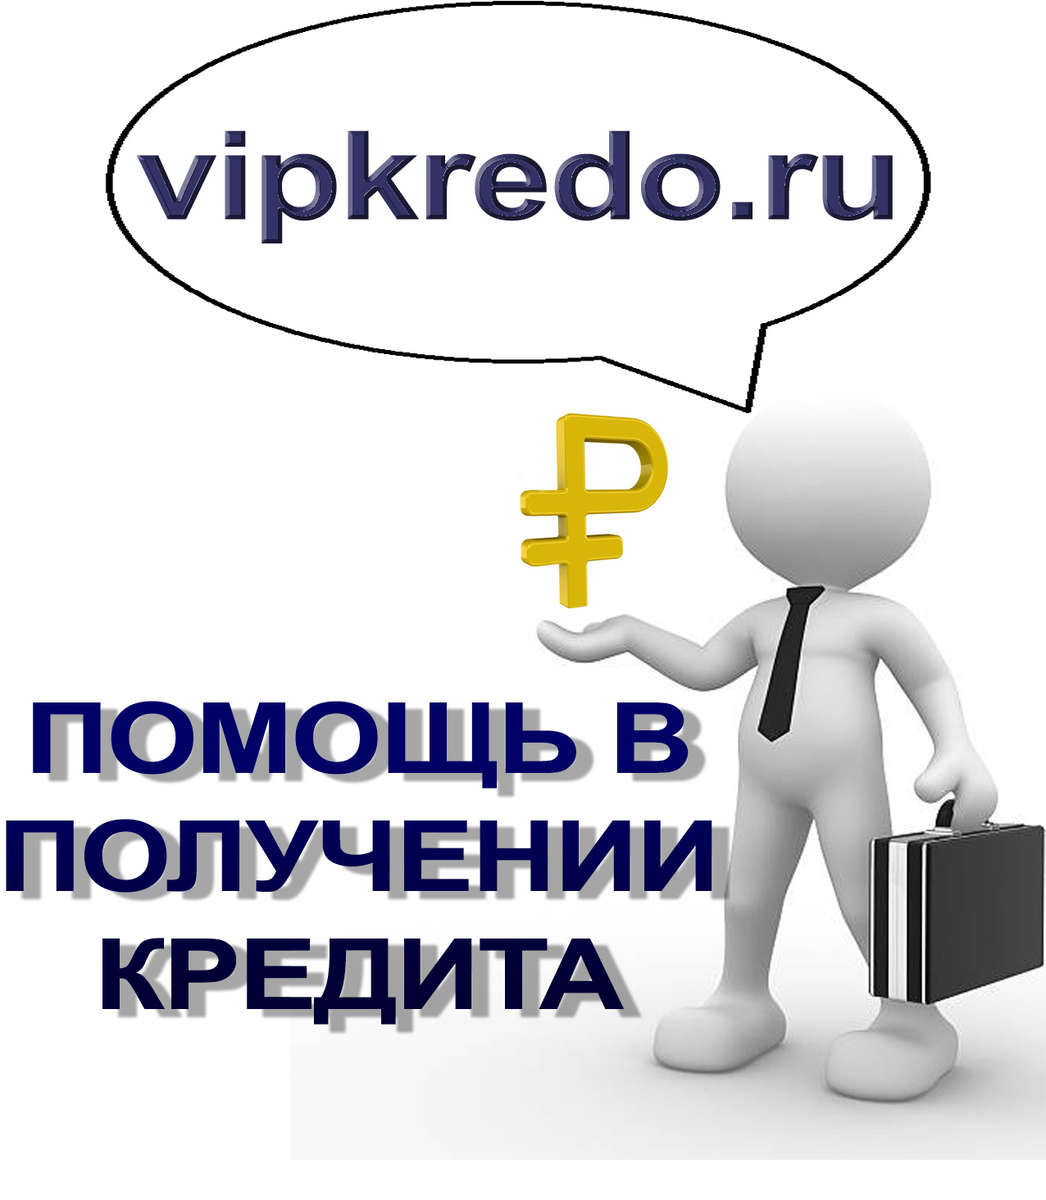 Потребительский кредит до 5,0 млн. руб., рефинансирование, ипотека, кредиты для бизнеса в Москве. Без предоплаты